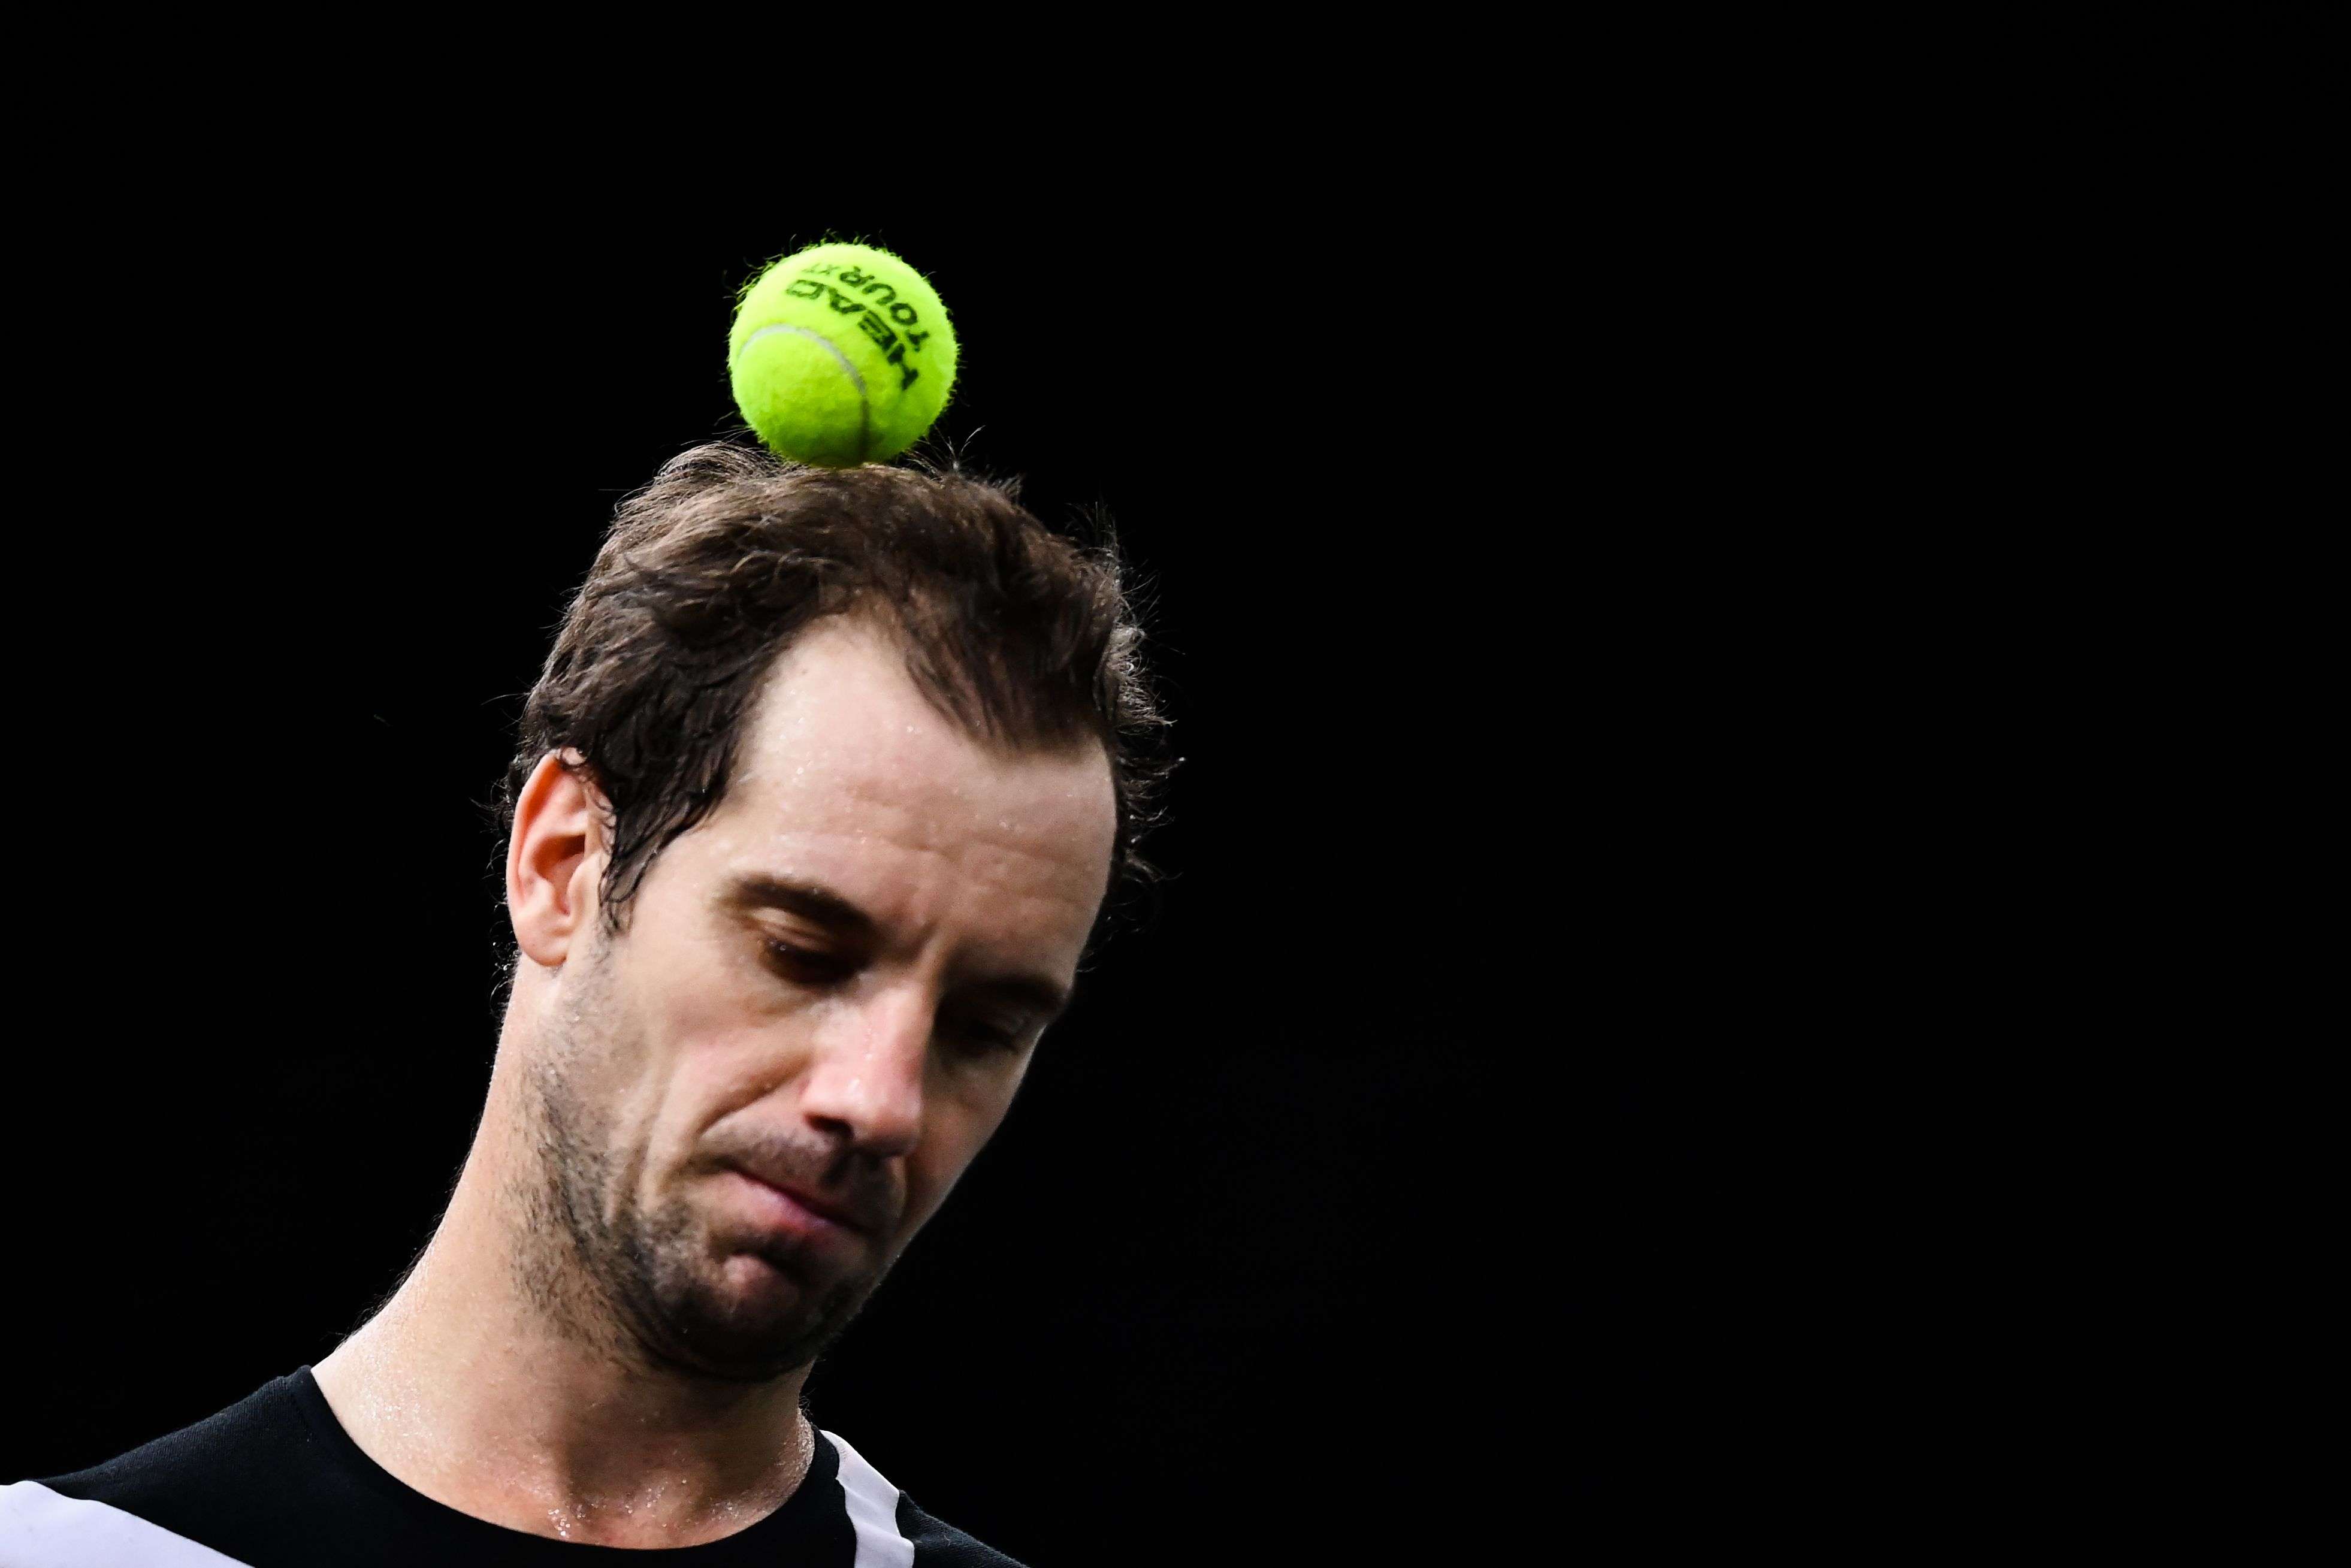 لاعب تنس فرنسي يضع الكرة على رأسه